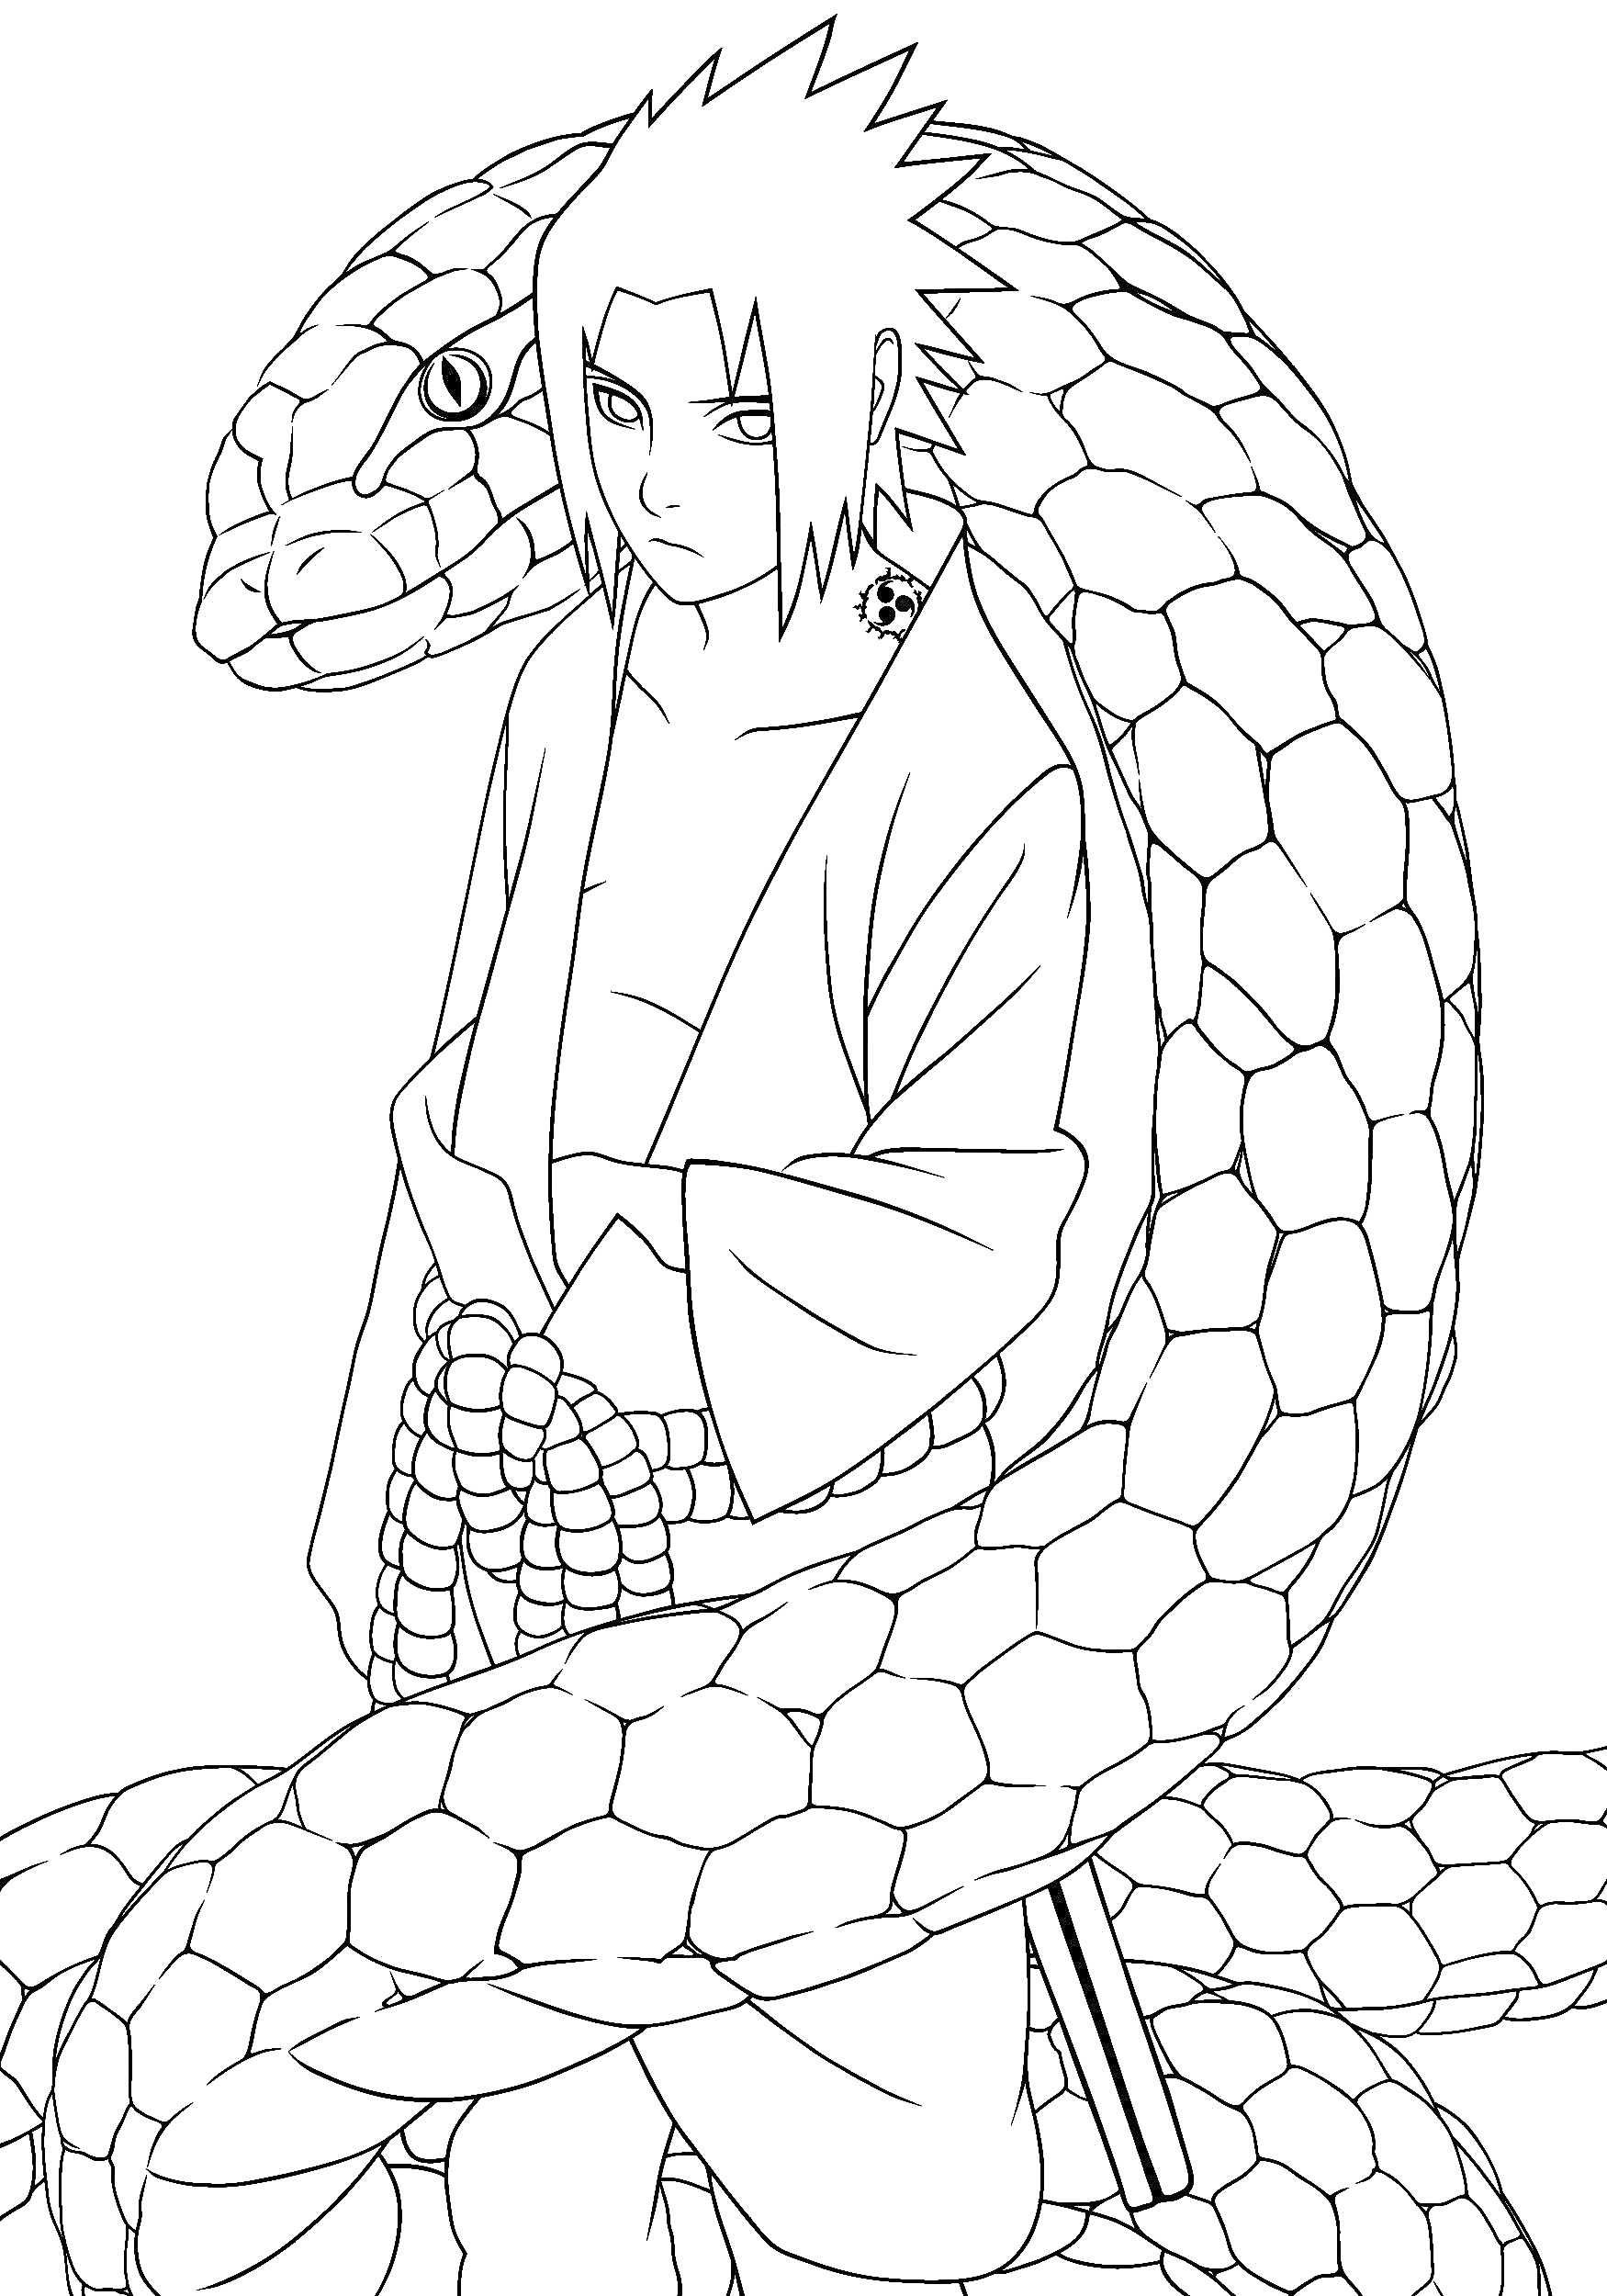 Раскраска Человек в кимоно с поясом и мечом, обвитый огромной змеёй